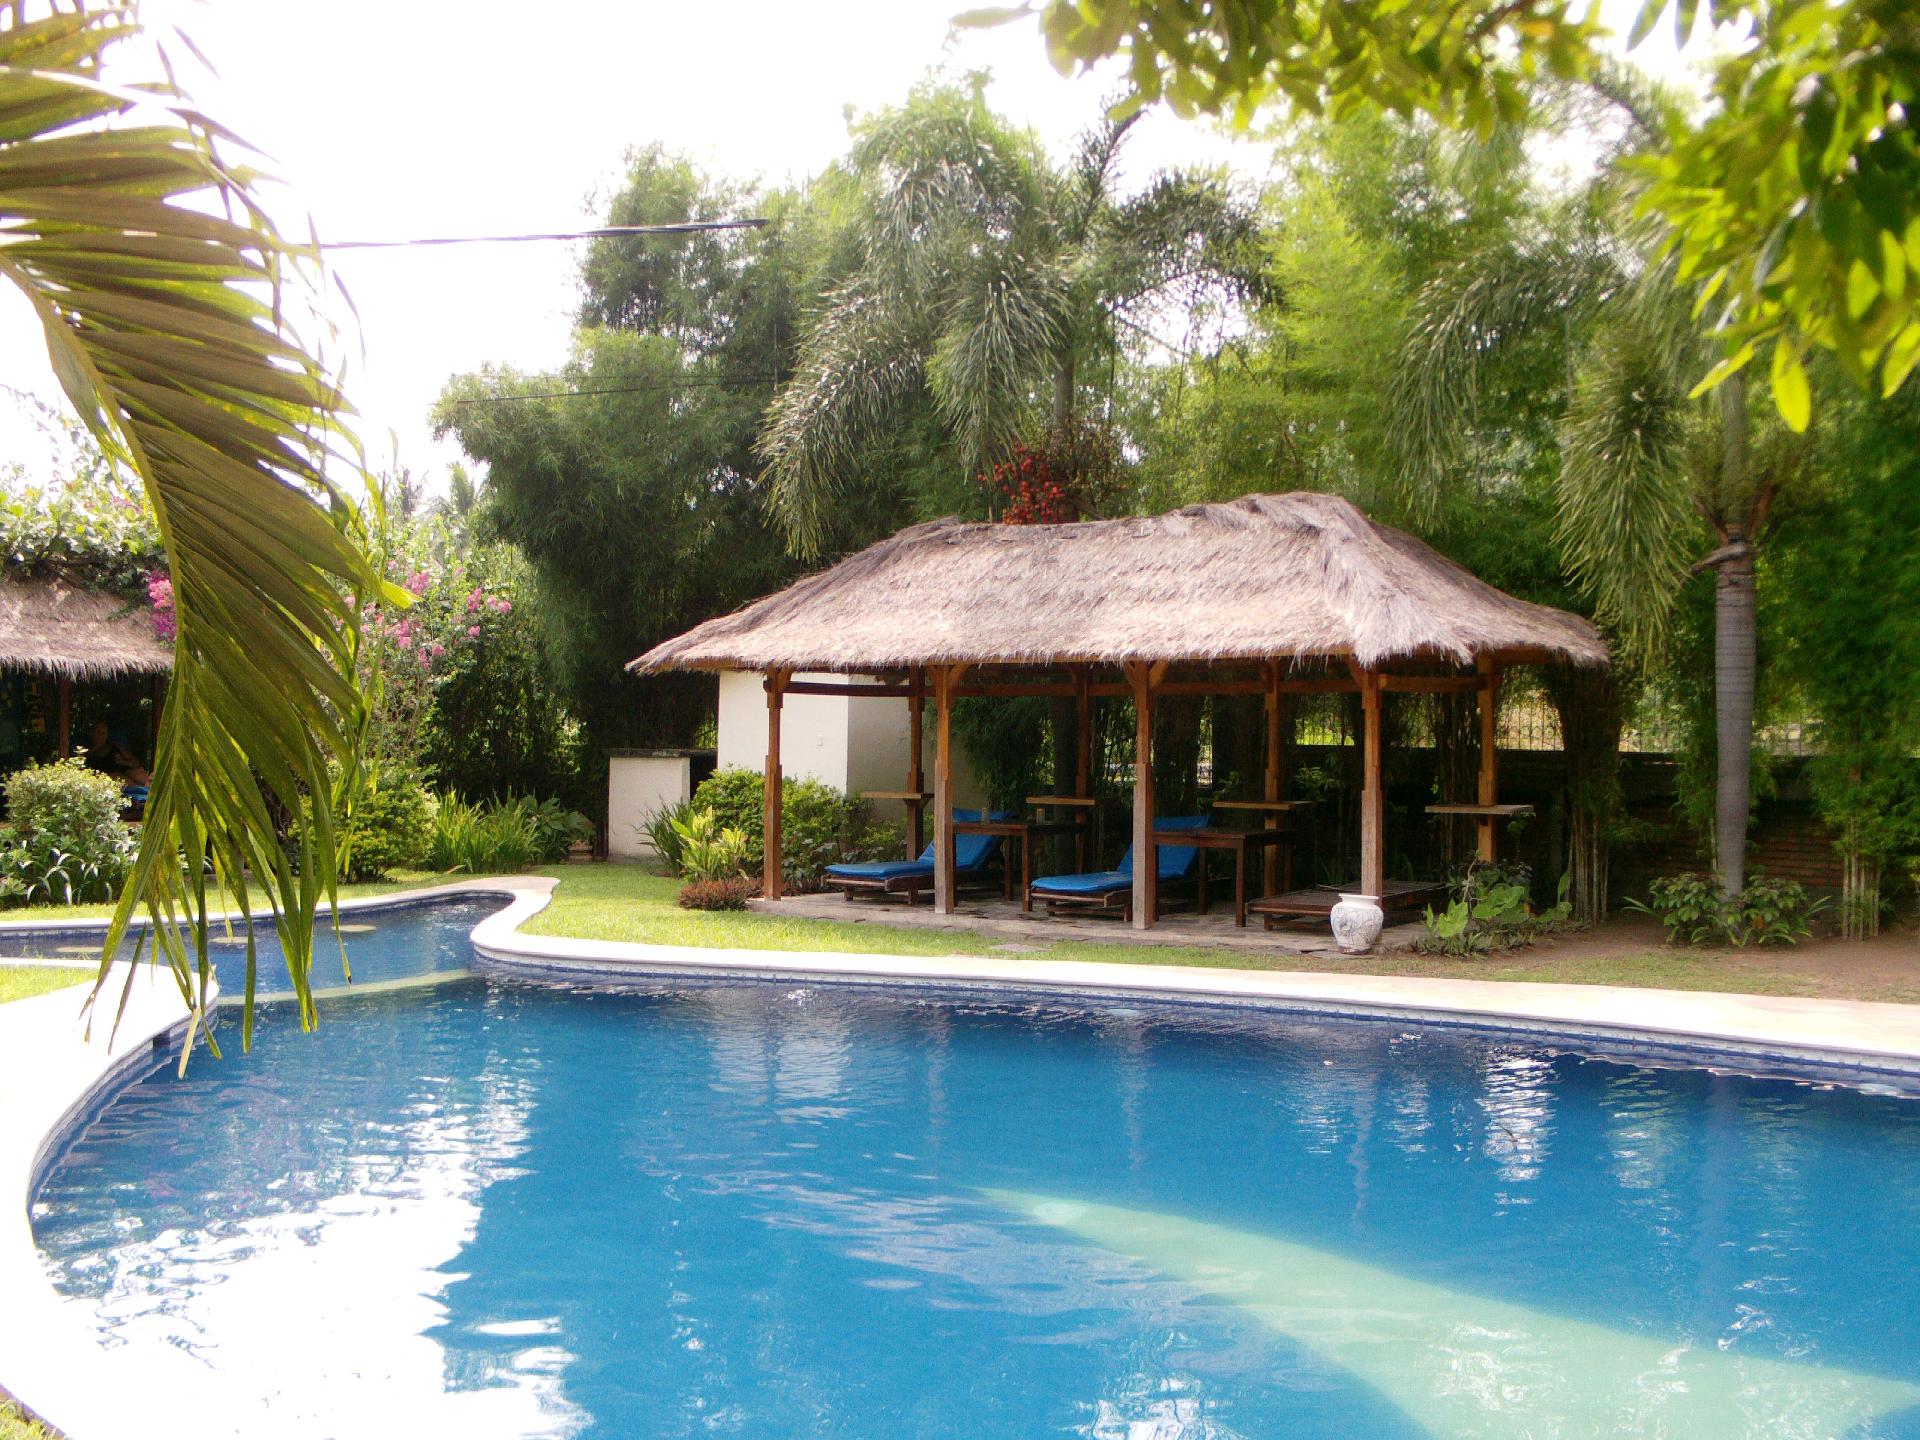 Ferienhaus mit Privatpool für 7 Personen  + 1 Ferienhaus in Indonesien